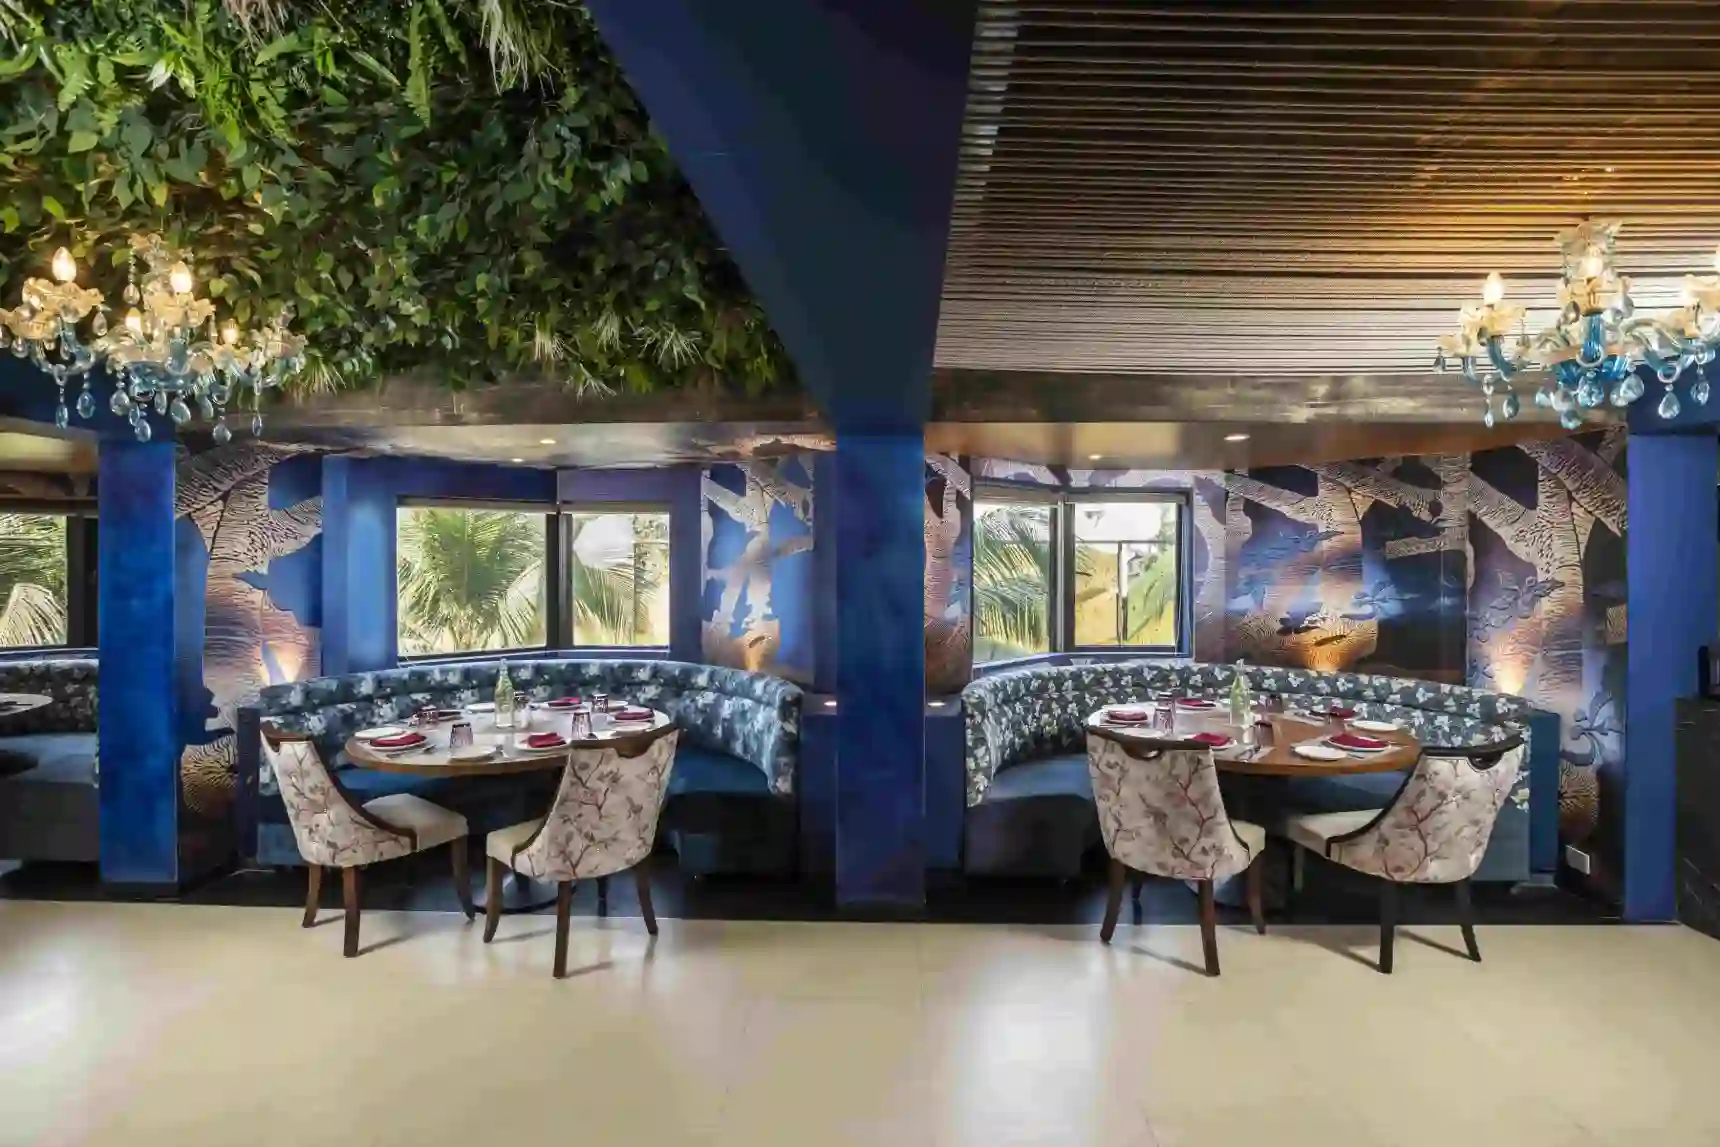 Nusara Kitchen & Bar - Best Restaurant in Juhu - Ramee Guestline Hotel in Juhu